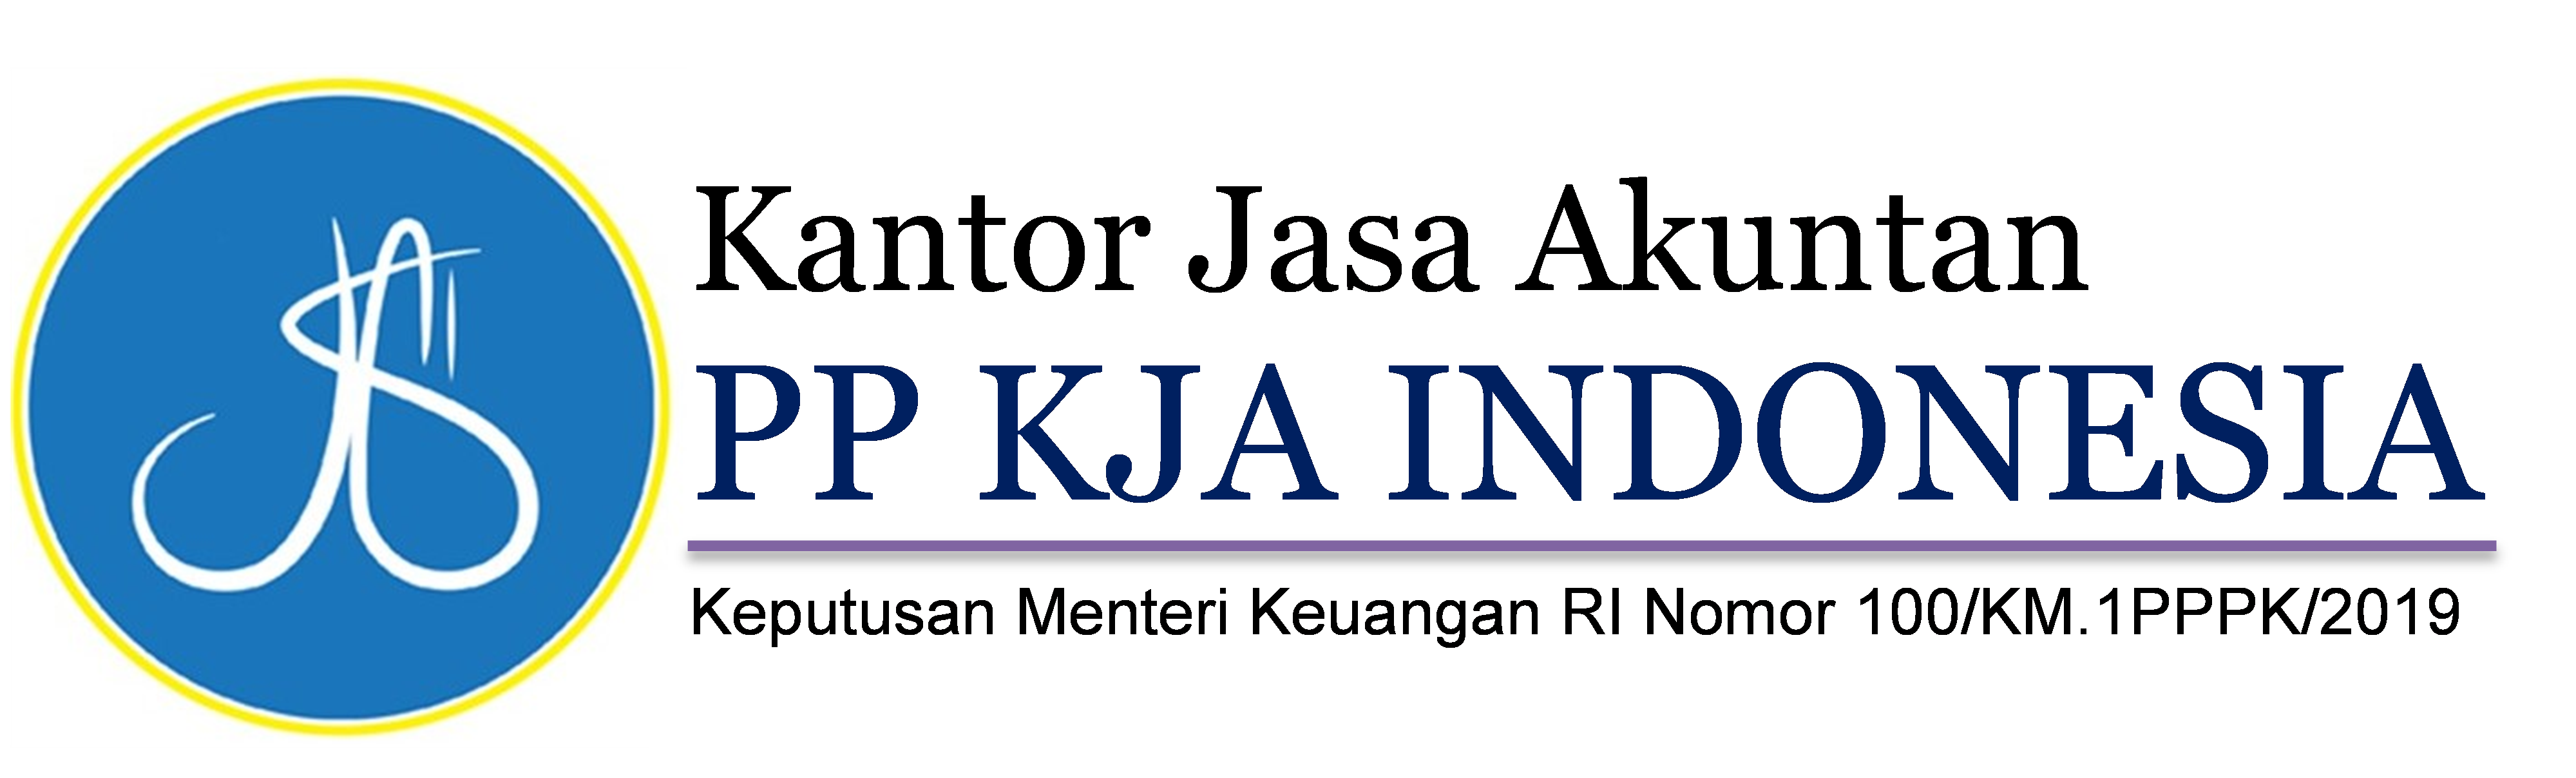 PP KJA Indonesia